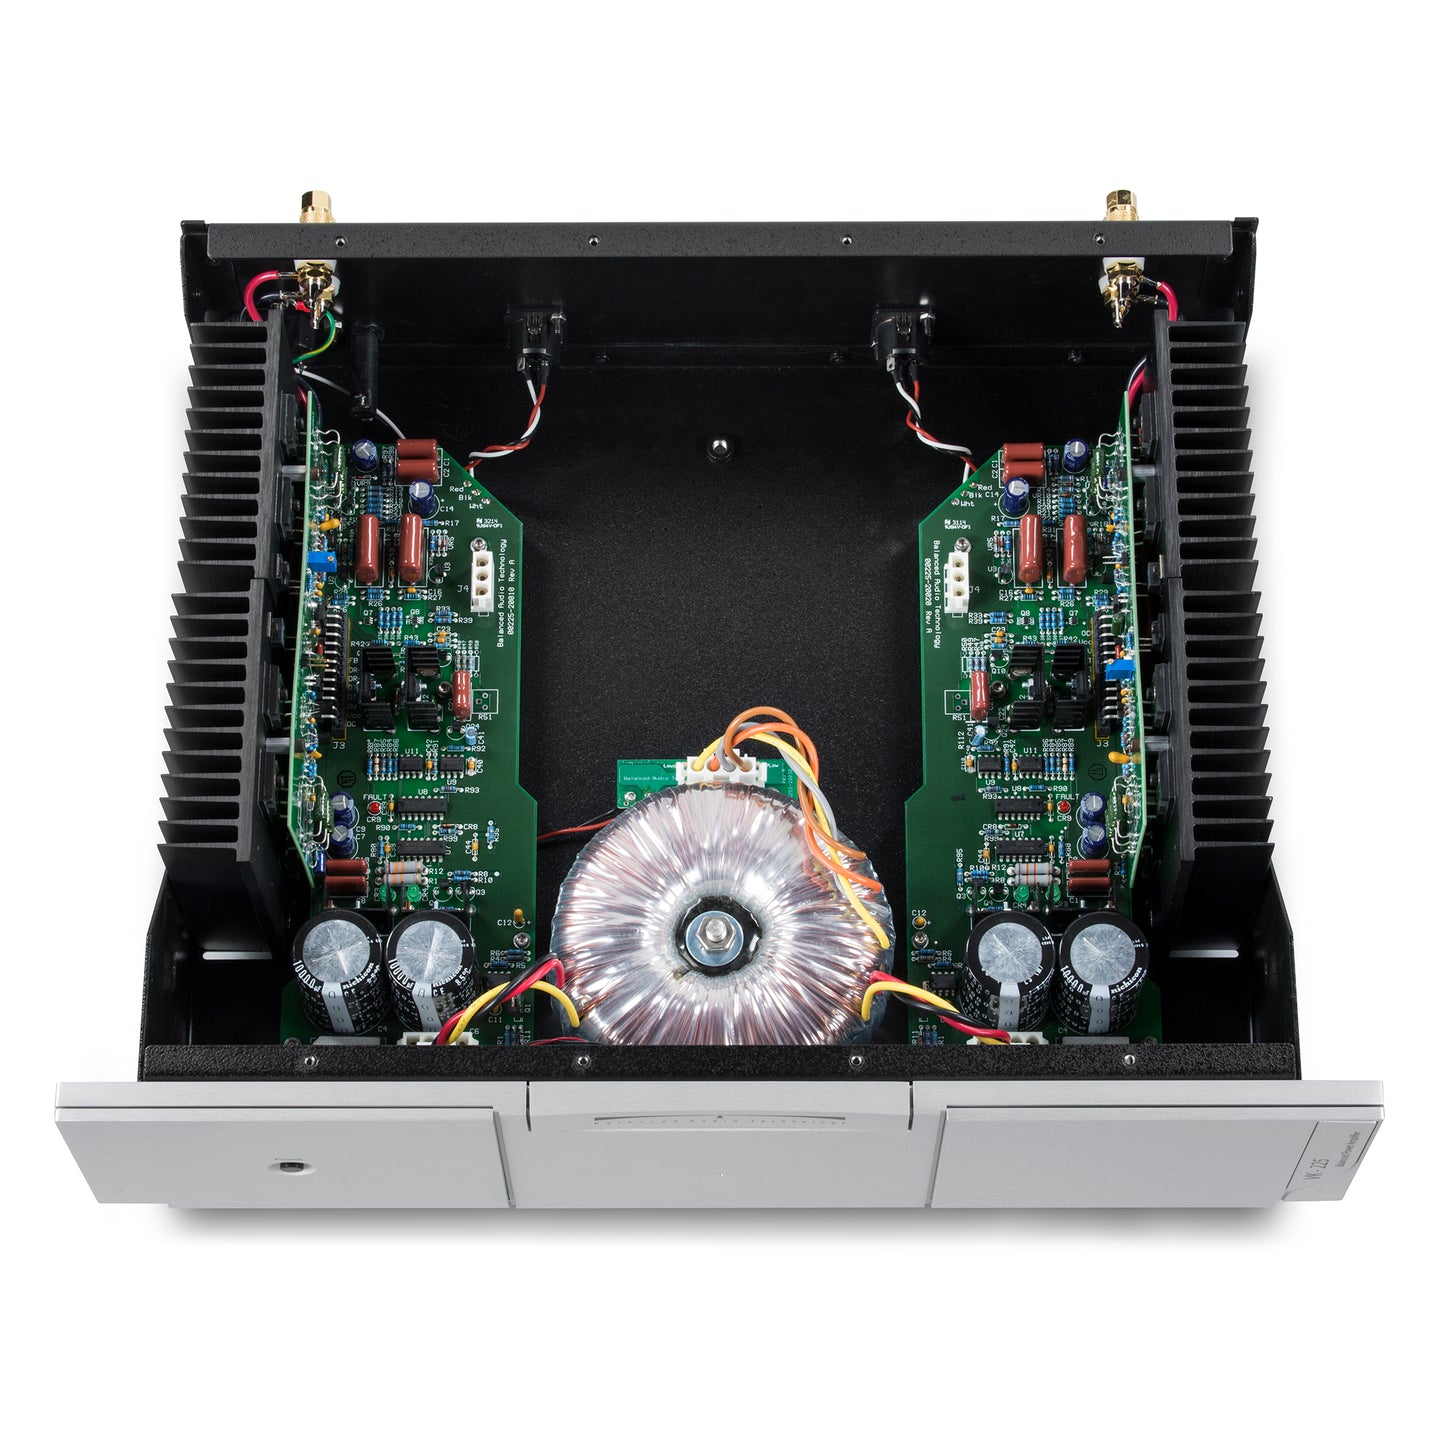 Balanced Audio Technology VK-225 Power Amplifier